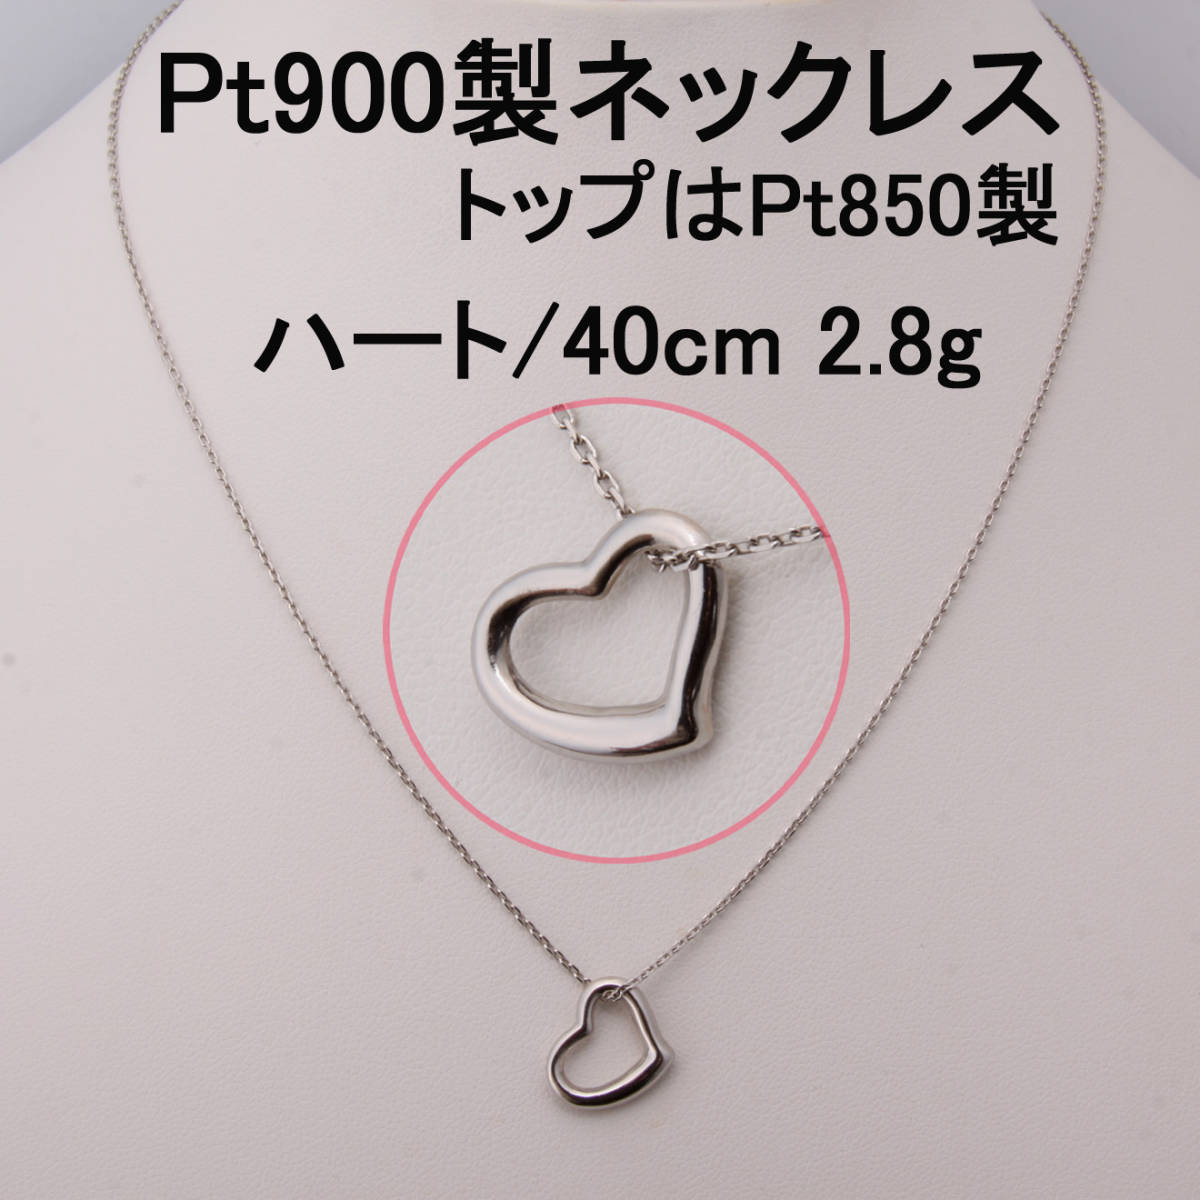 ◇質◇Pt850/Pt900製トップ付きネックレス ハートモチーフ プラチナ